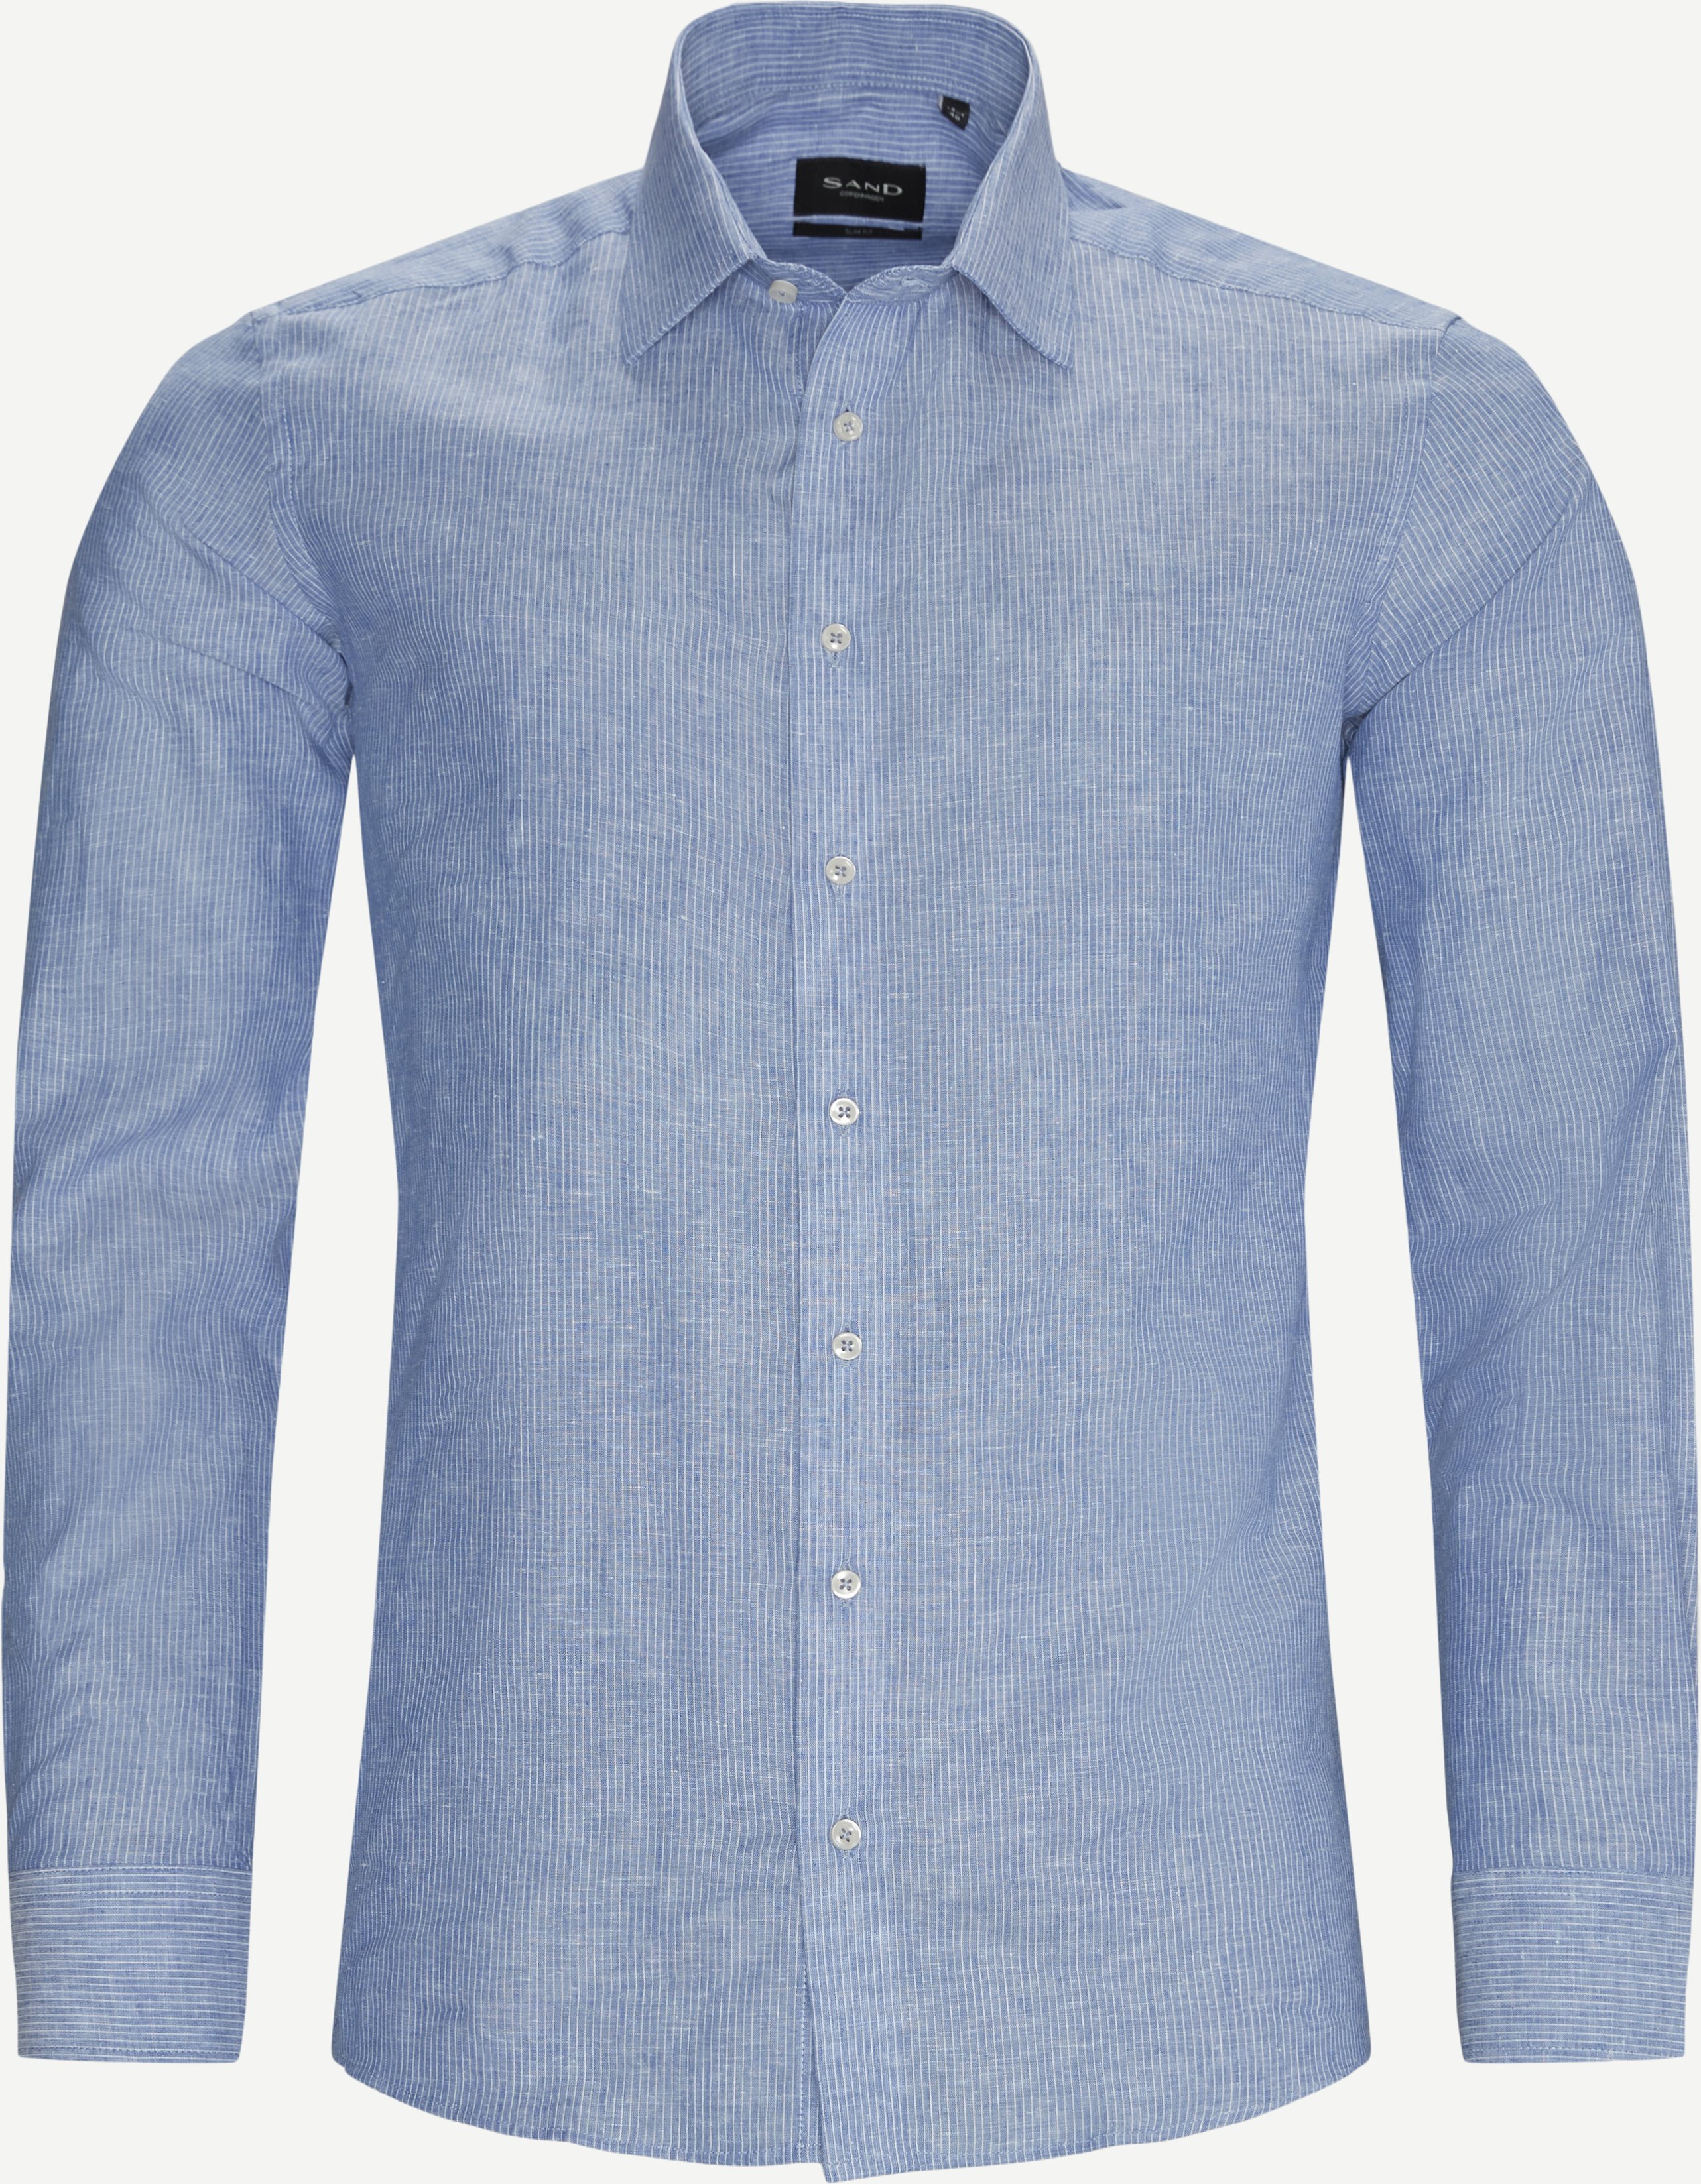 Iver 2 Weiches Hemd - Hemden - Slim fit - Blau